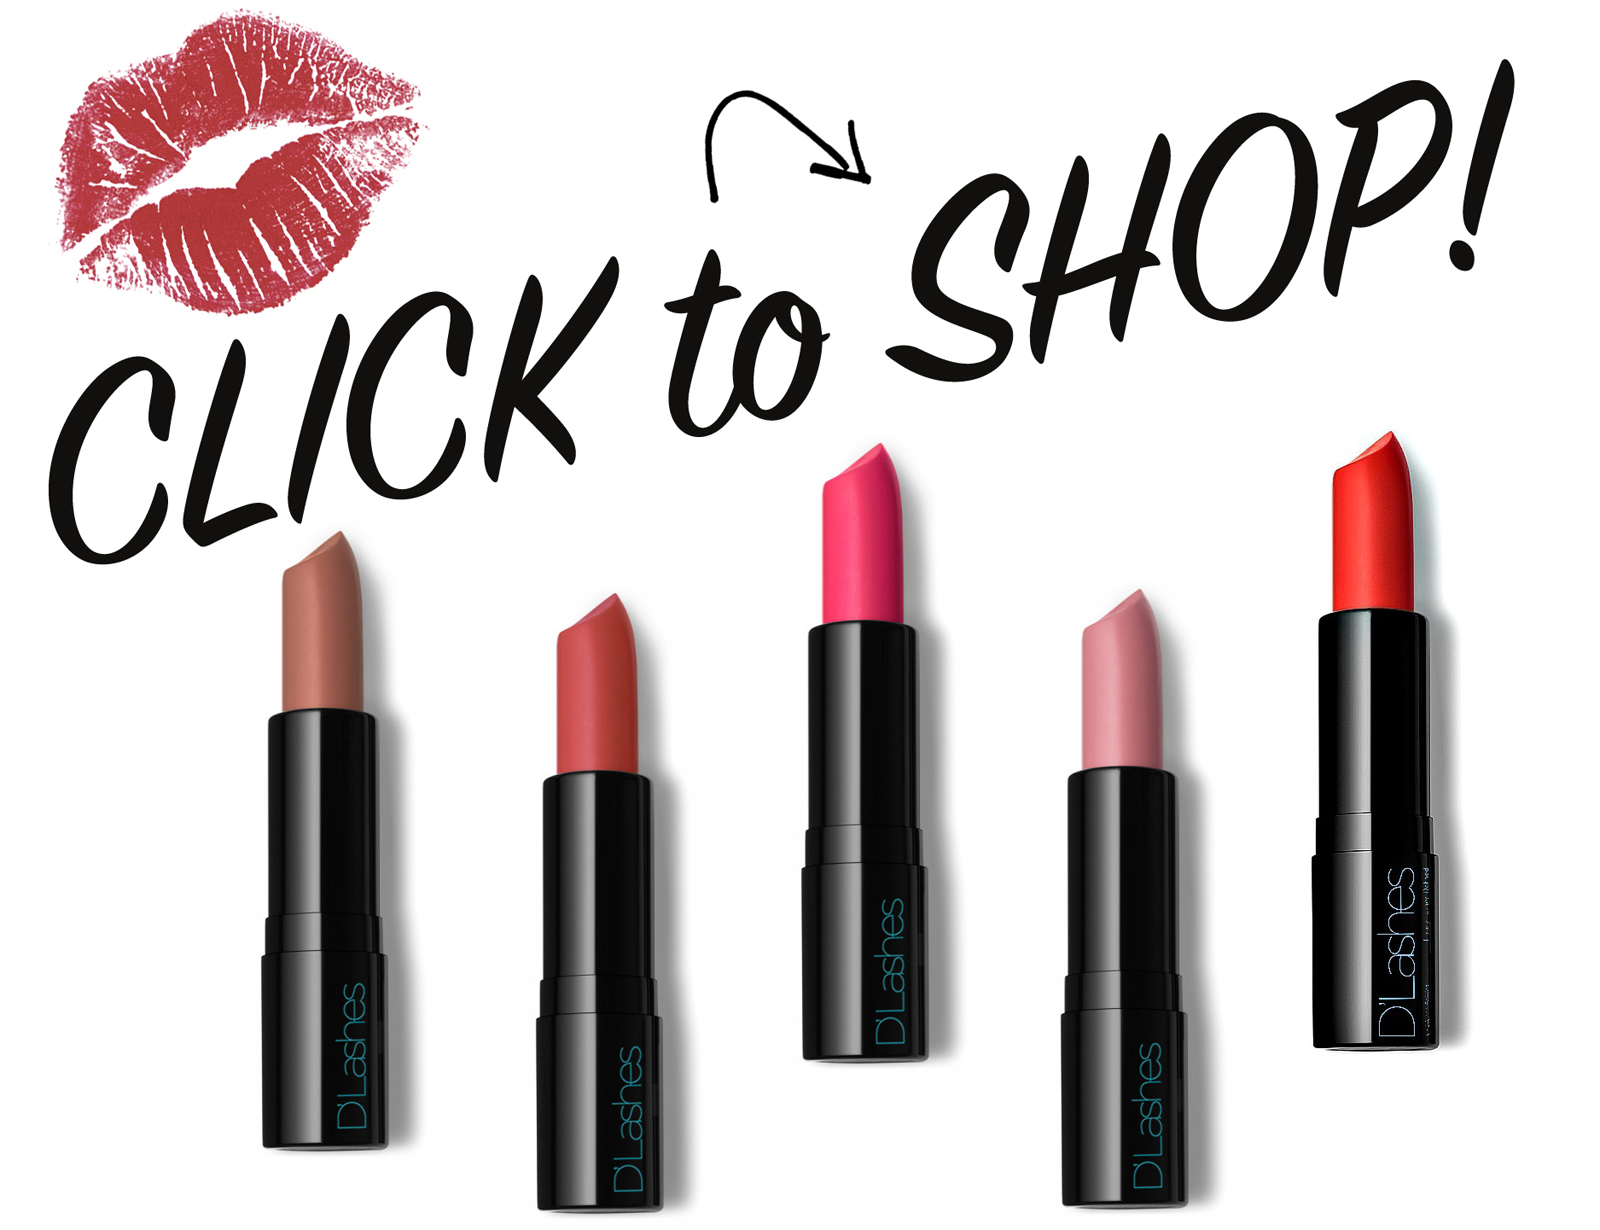 Dlashes nude lipstick beauty blog